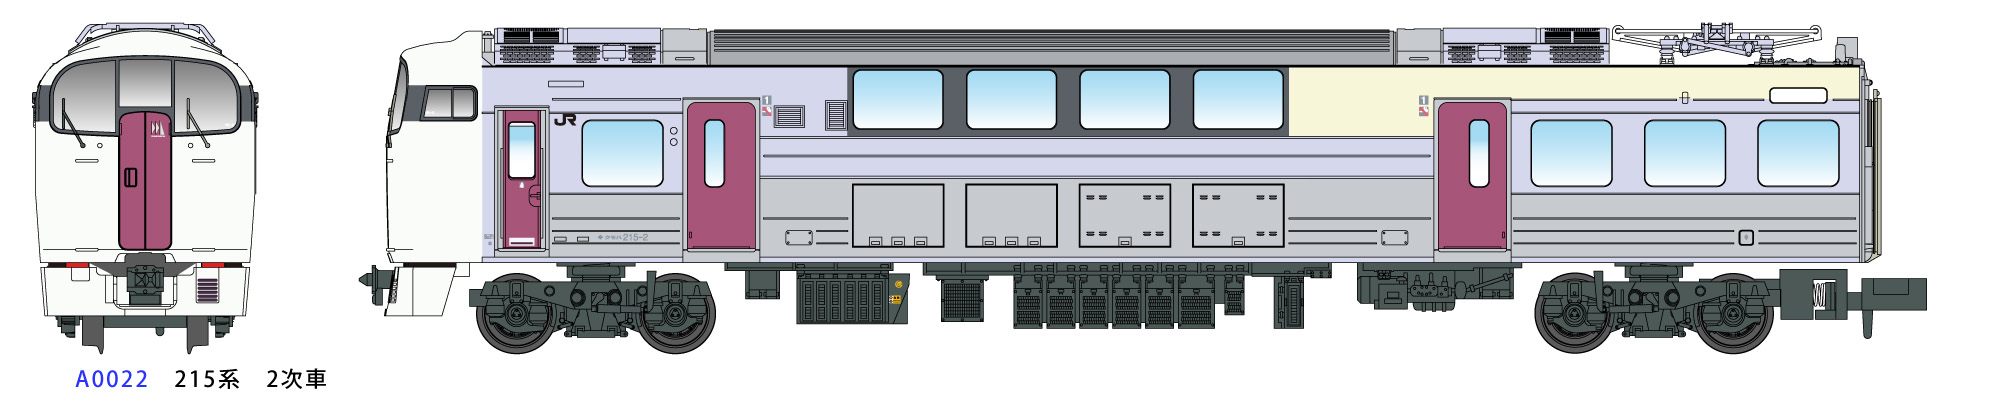 A マイクロエース 系2次車 6両基本セット Nゲージ 鉄道模型